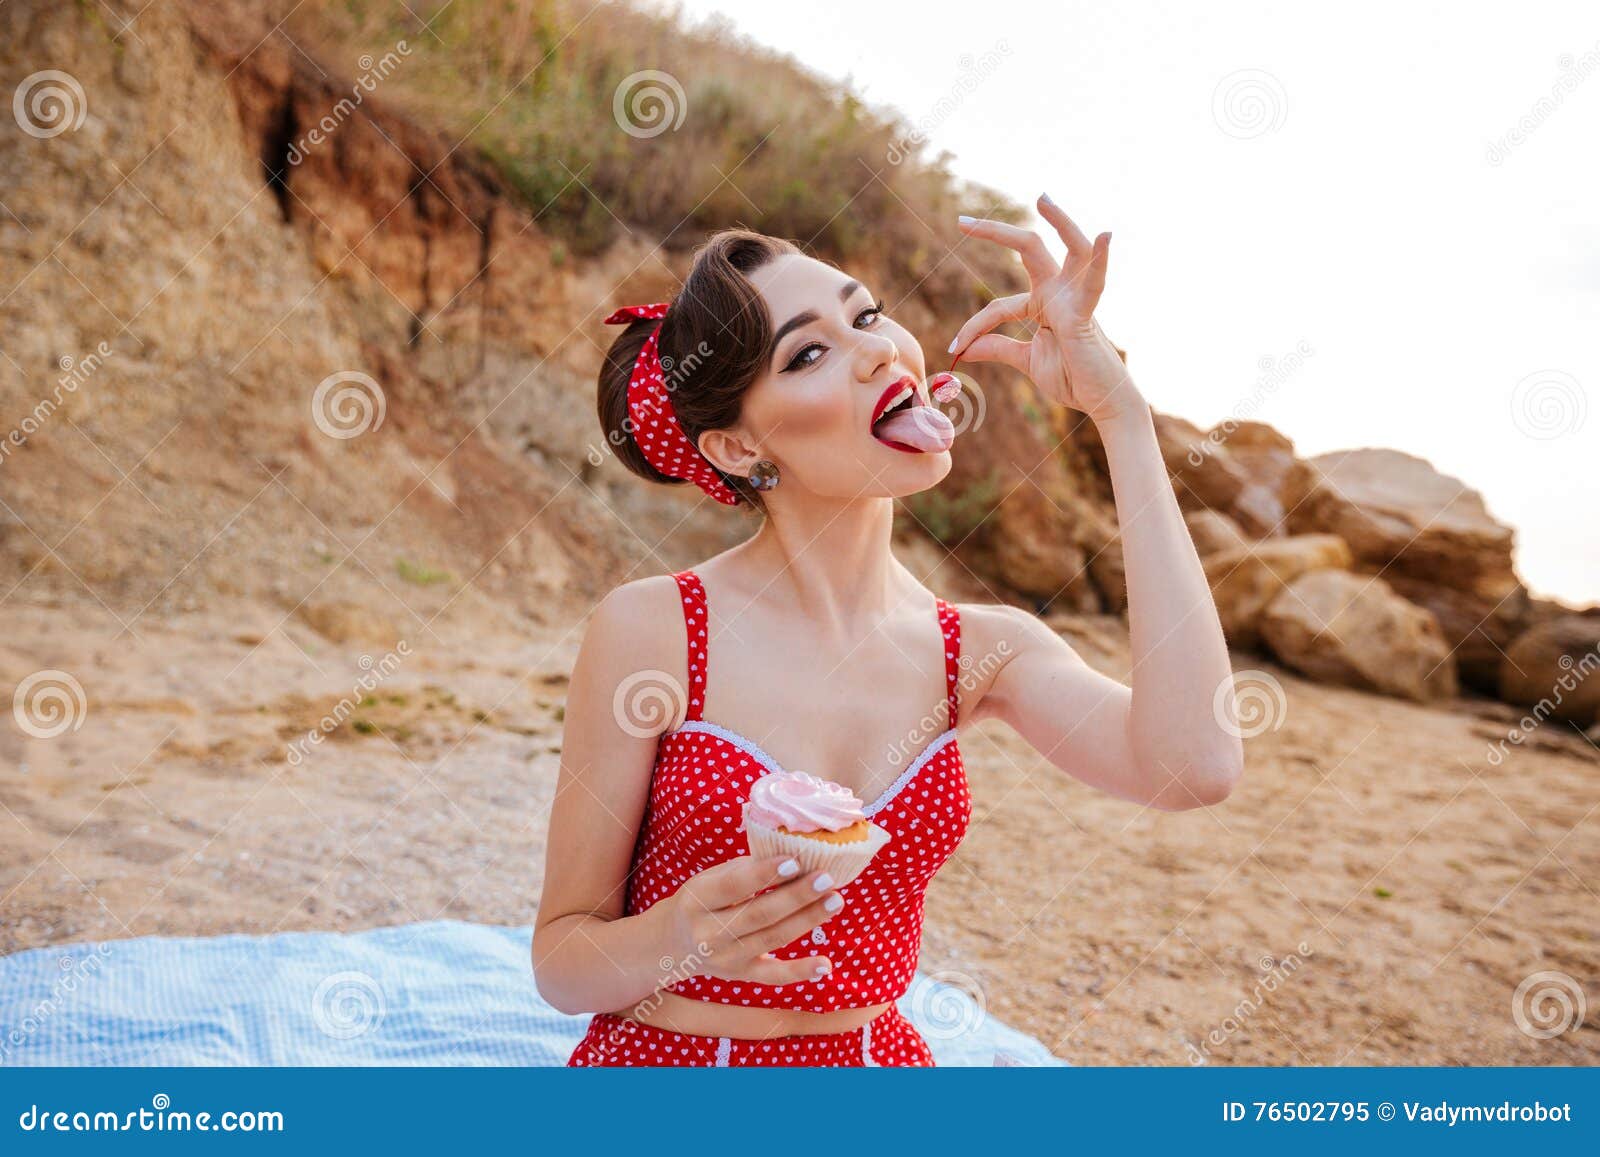 Девушки есть отдыхай. Пин ап море. Фотосессия в стиле пин-ап на море. Пин ап на пляже картинки. Фотосессии в Крыму пляжная пин ап.